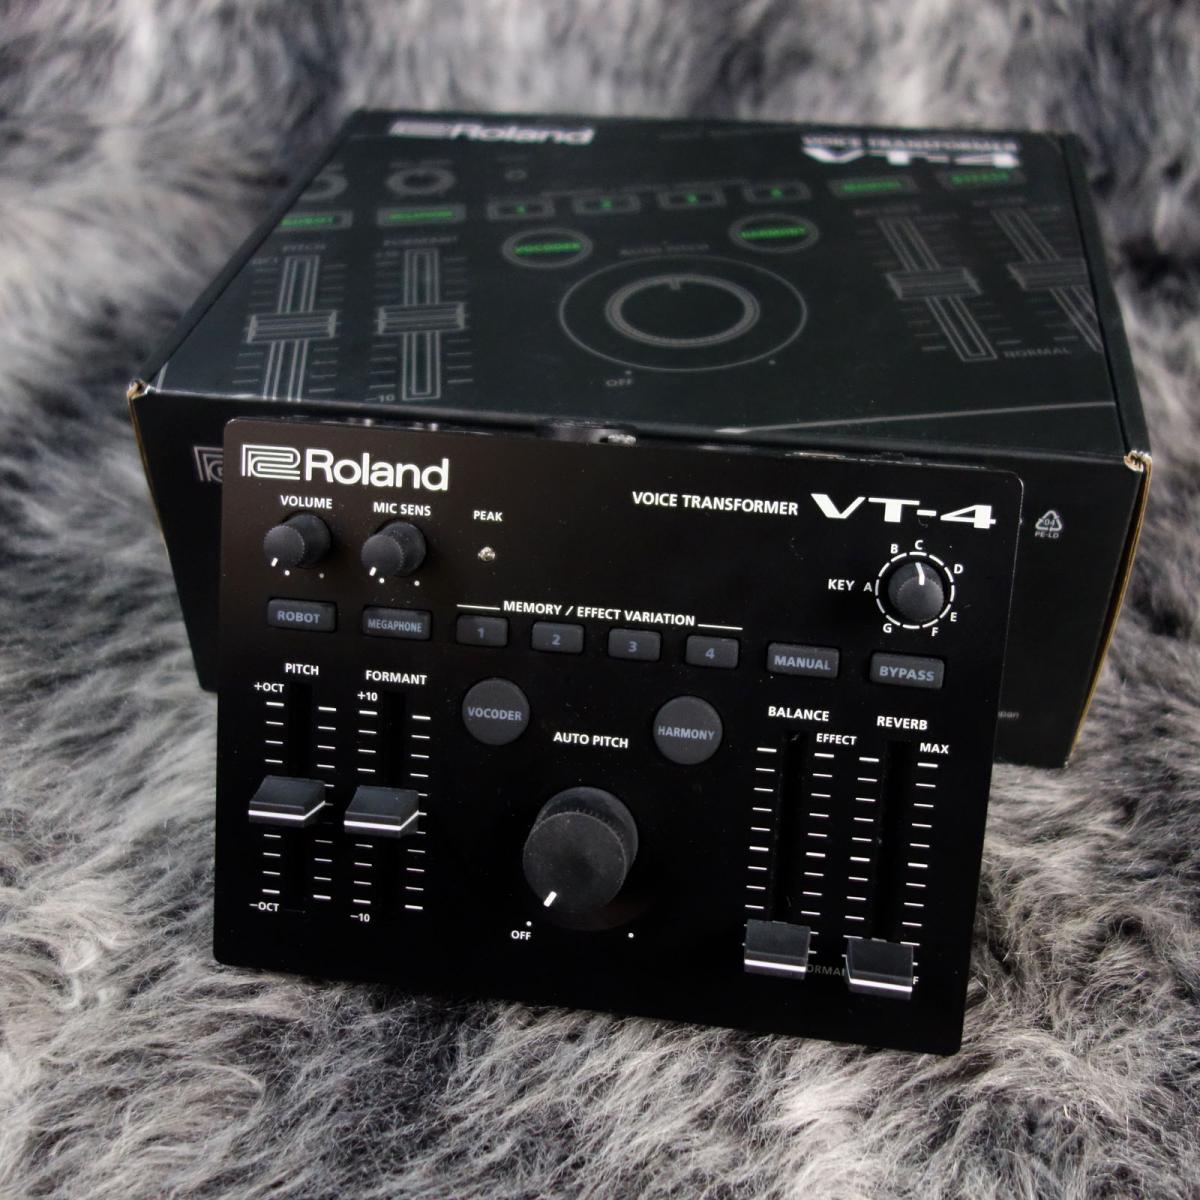 Roland VT-4 Voice Transformer 品 www.krzysztofbialy.com